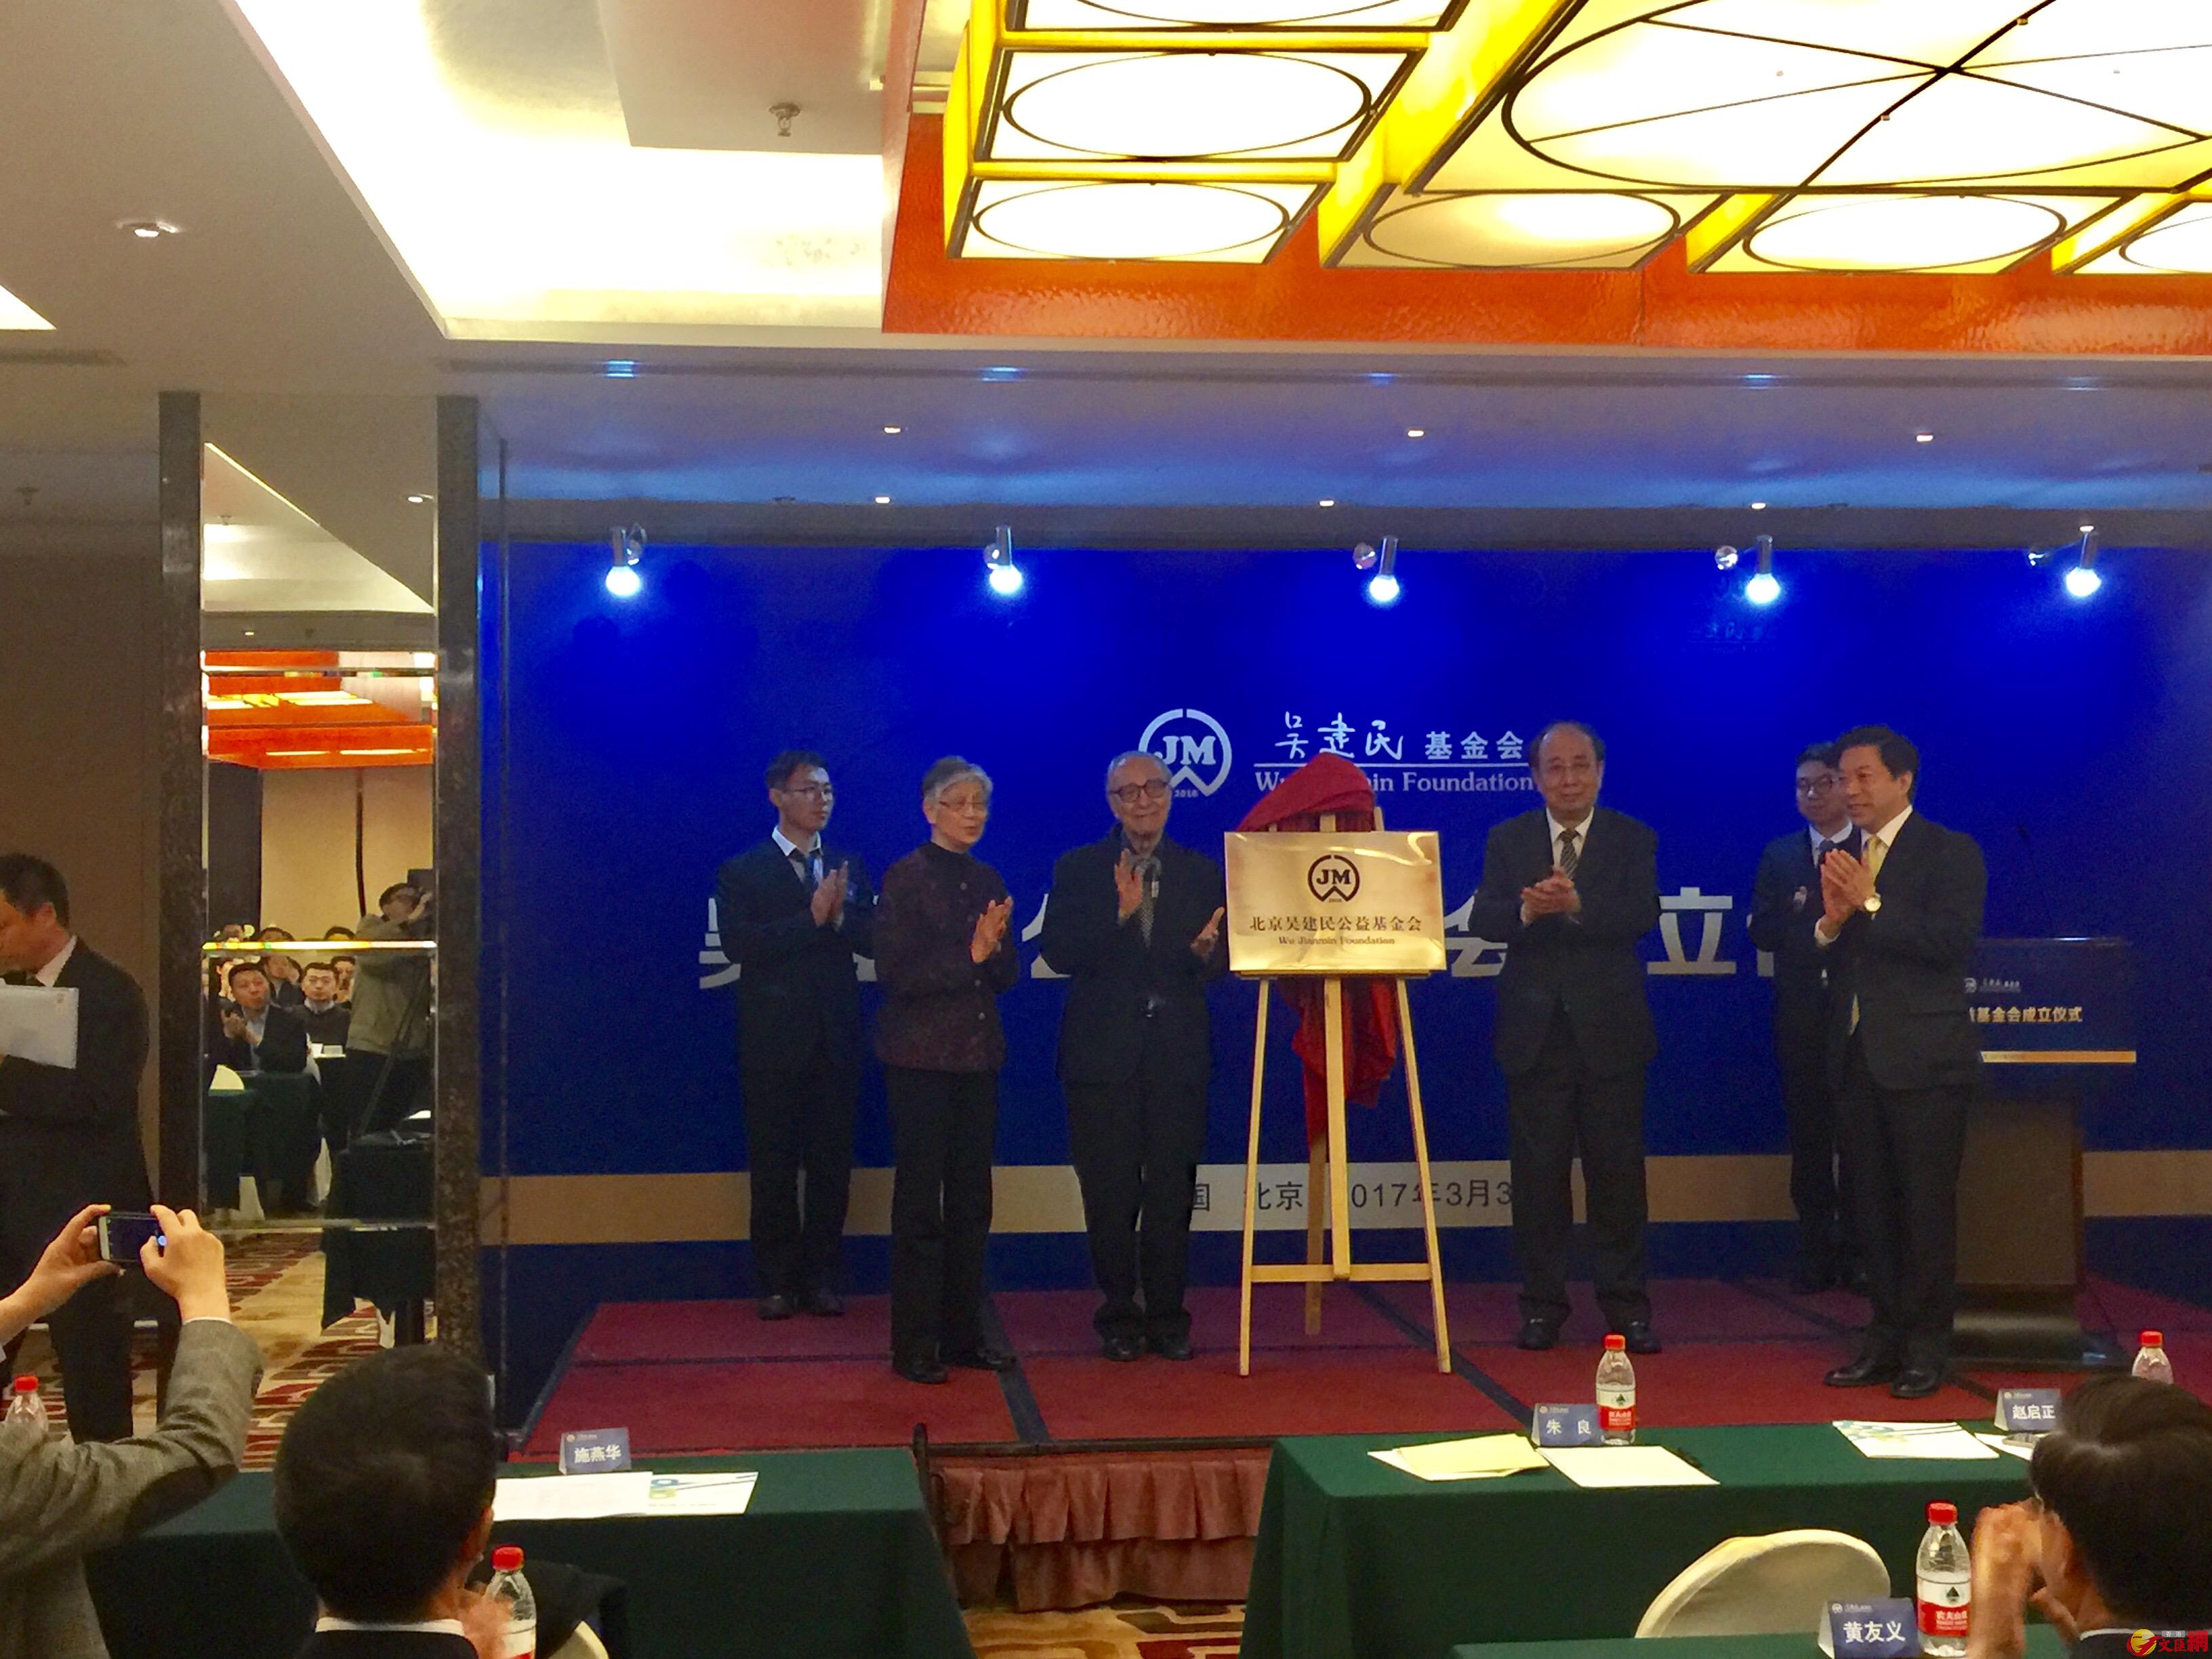 北京吴建民公益基金会成立仪式30日在北京举行。葛冲摄。